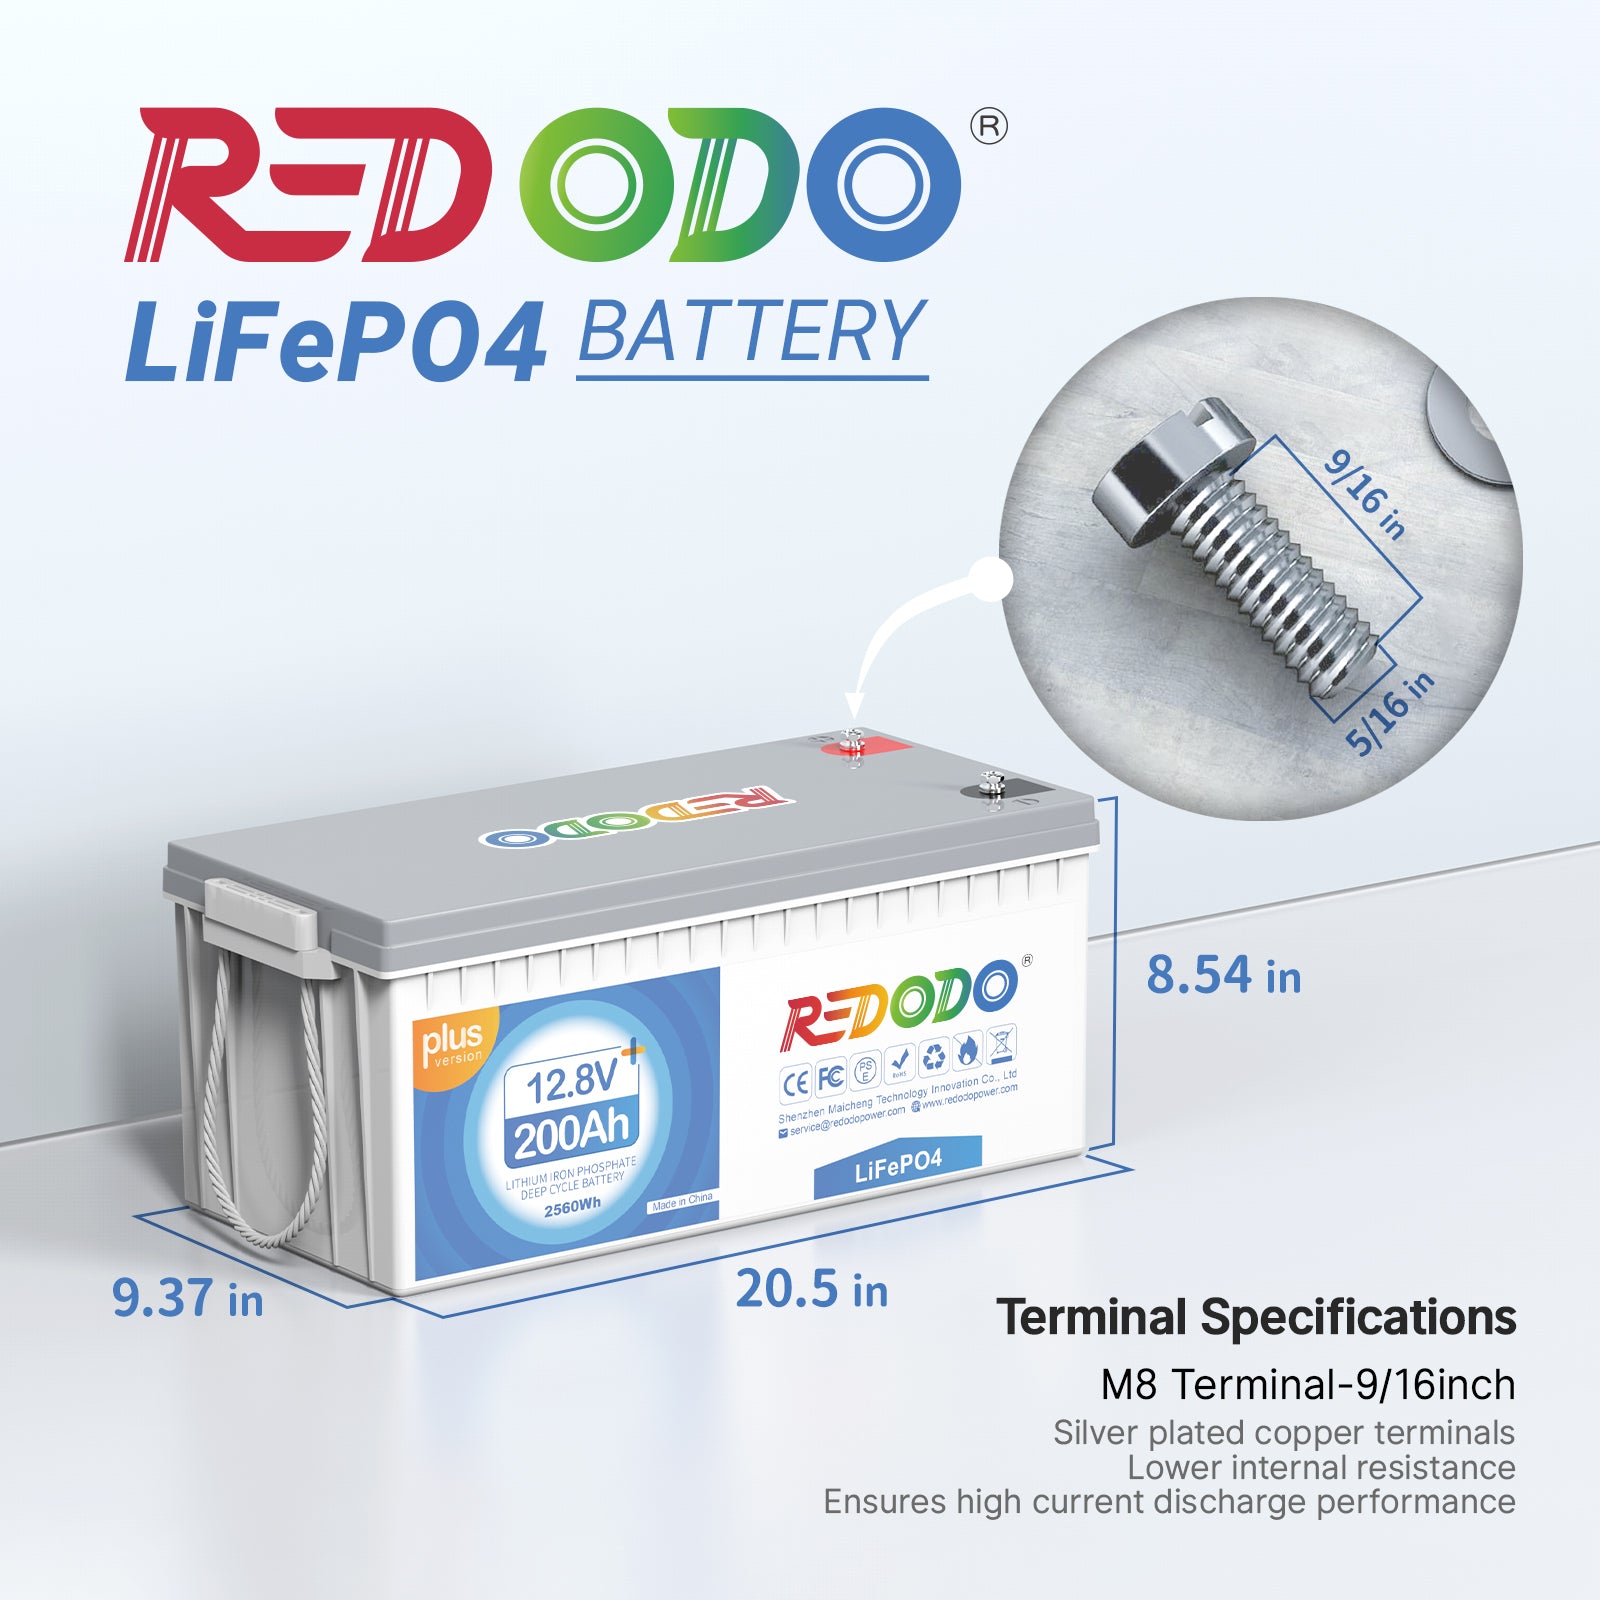 Redodo 12V 200Ah Plus LiFePO4 Battery | 2.56kWh & 2.56kW